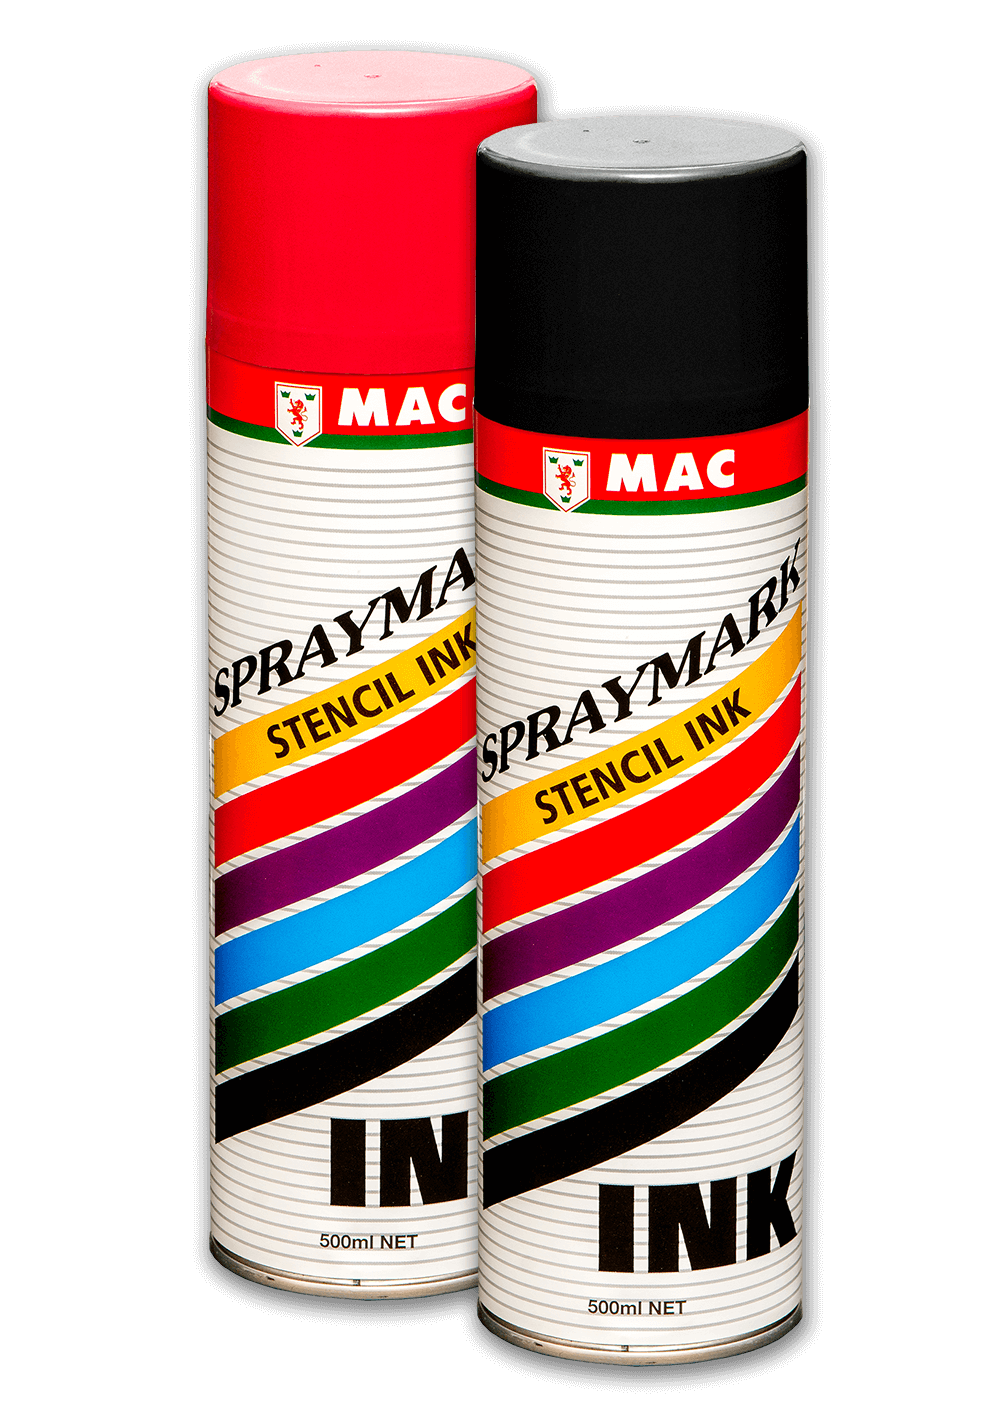 Stencil sprays